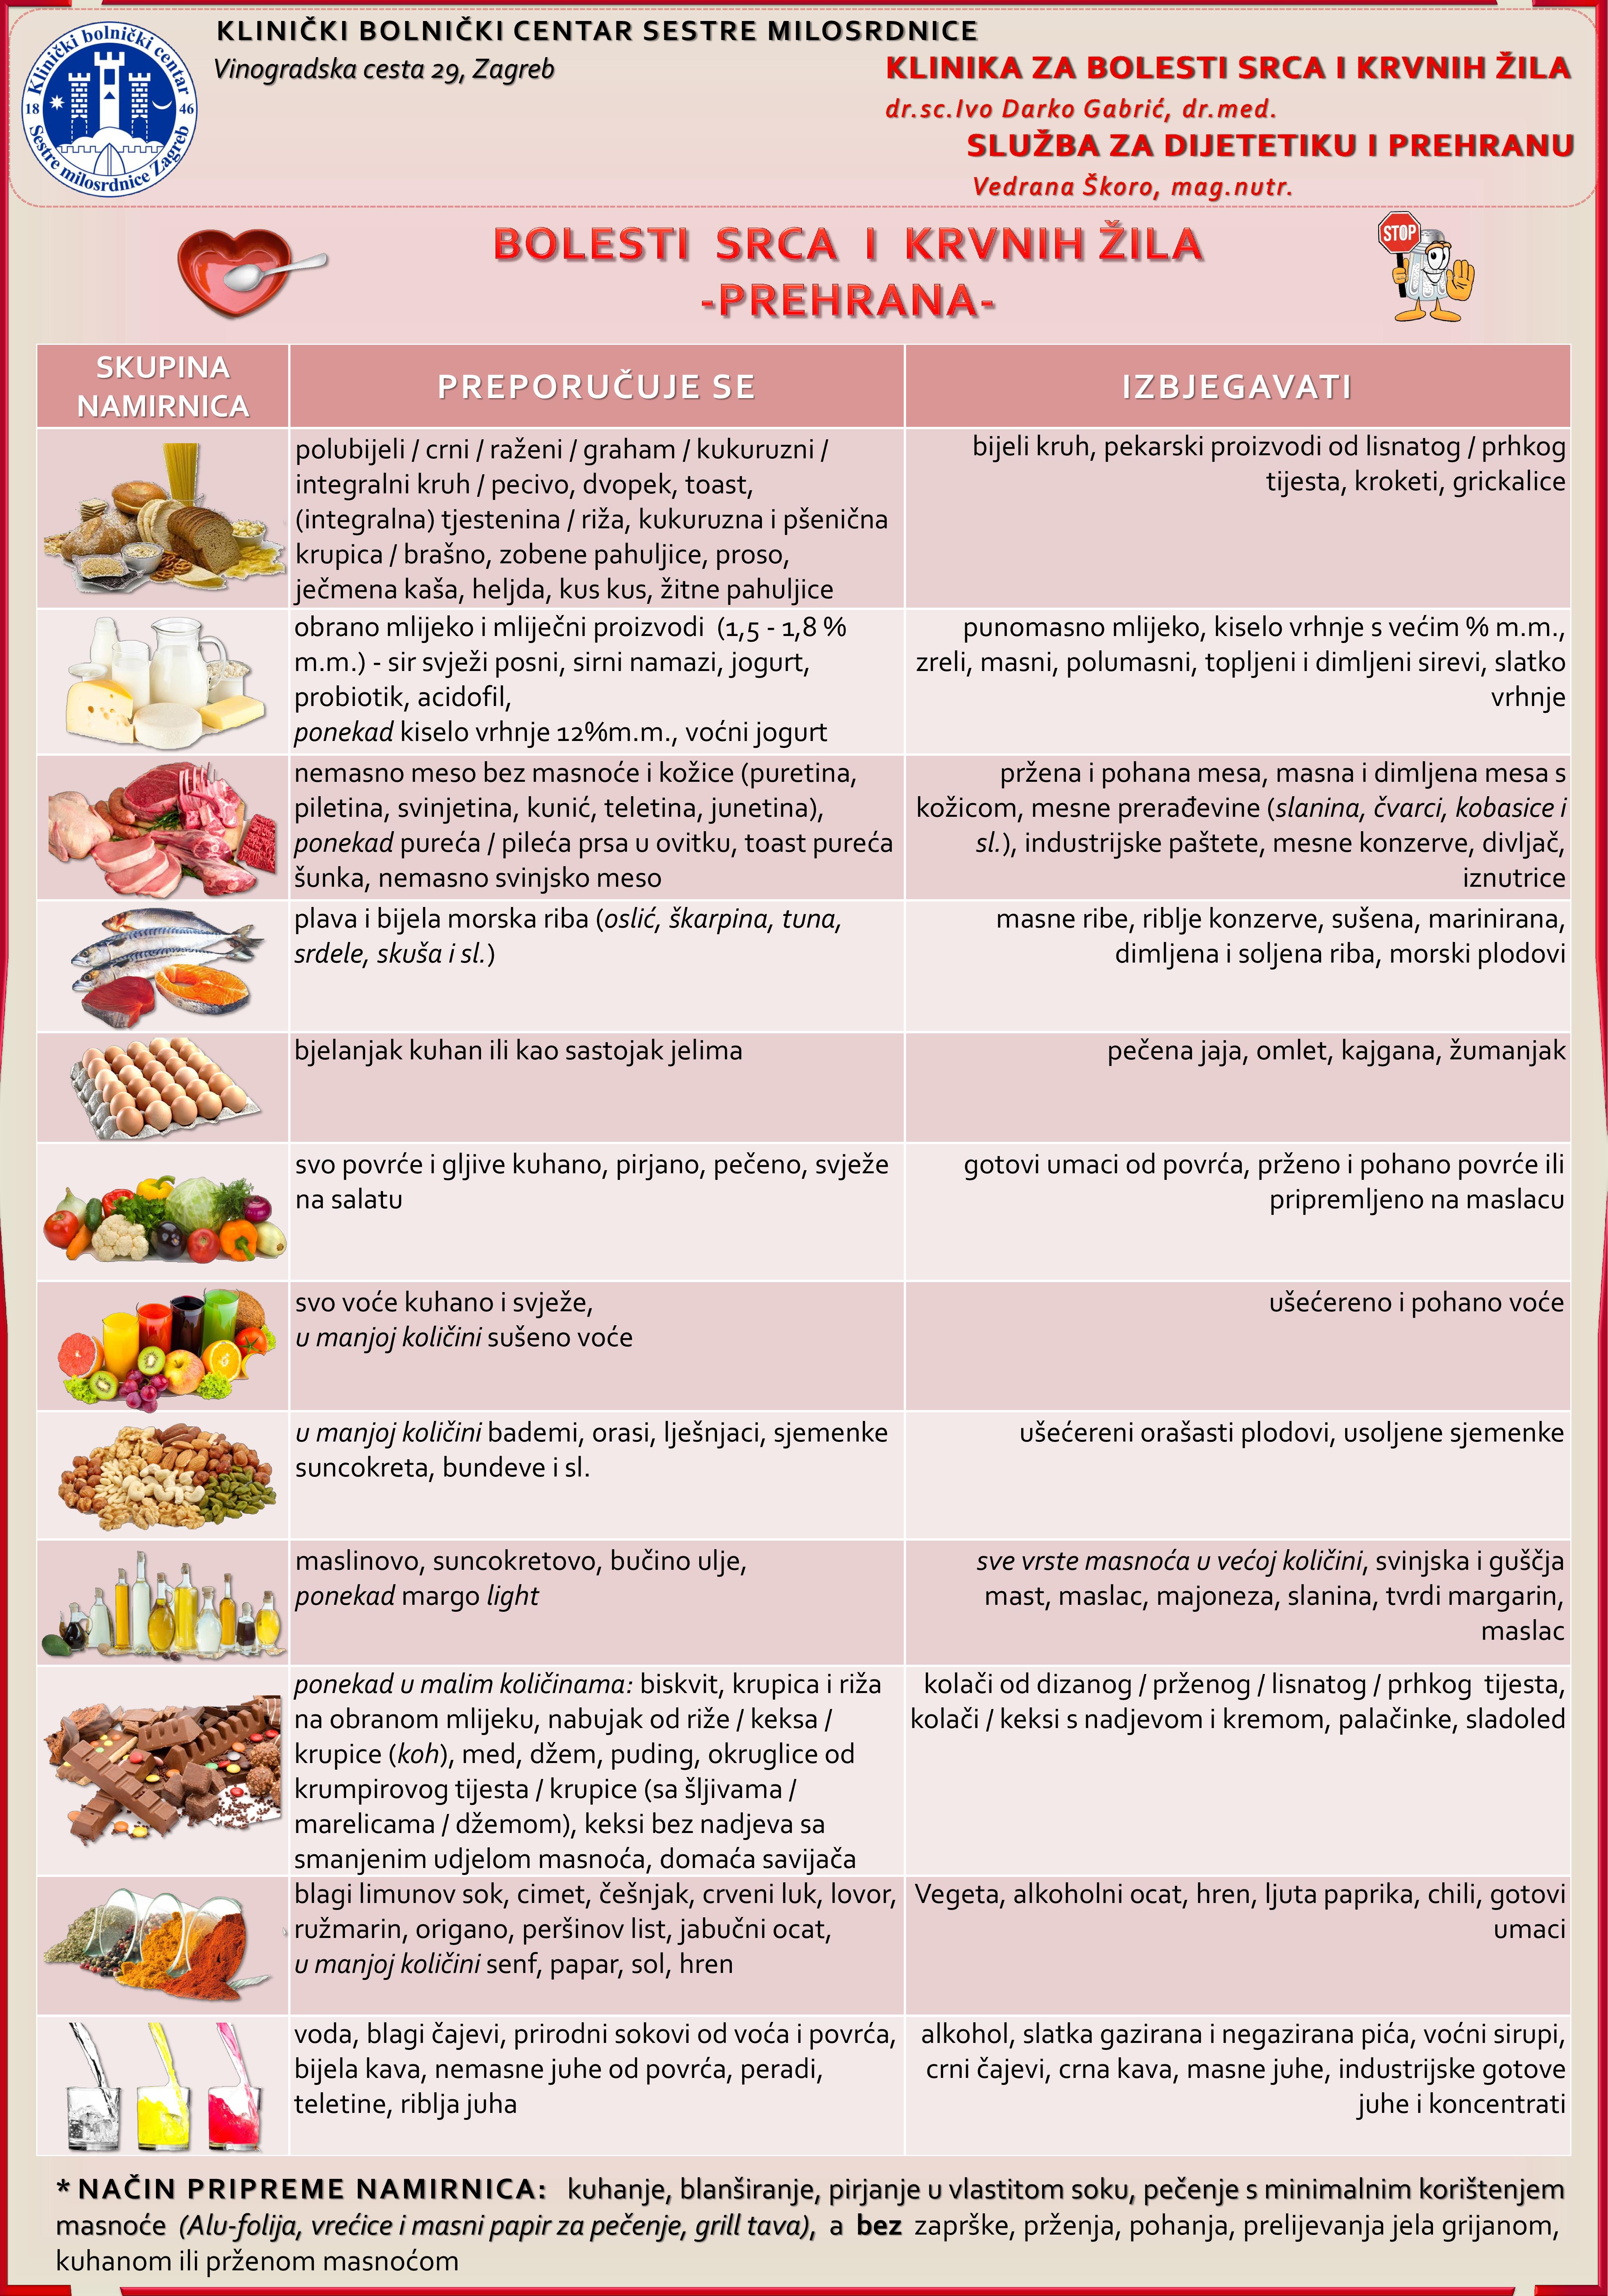 Pravila prehrane u liječenju hipertenzije - Ateroskleroza February